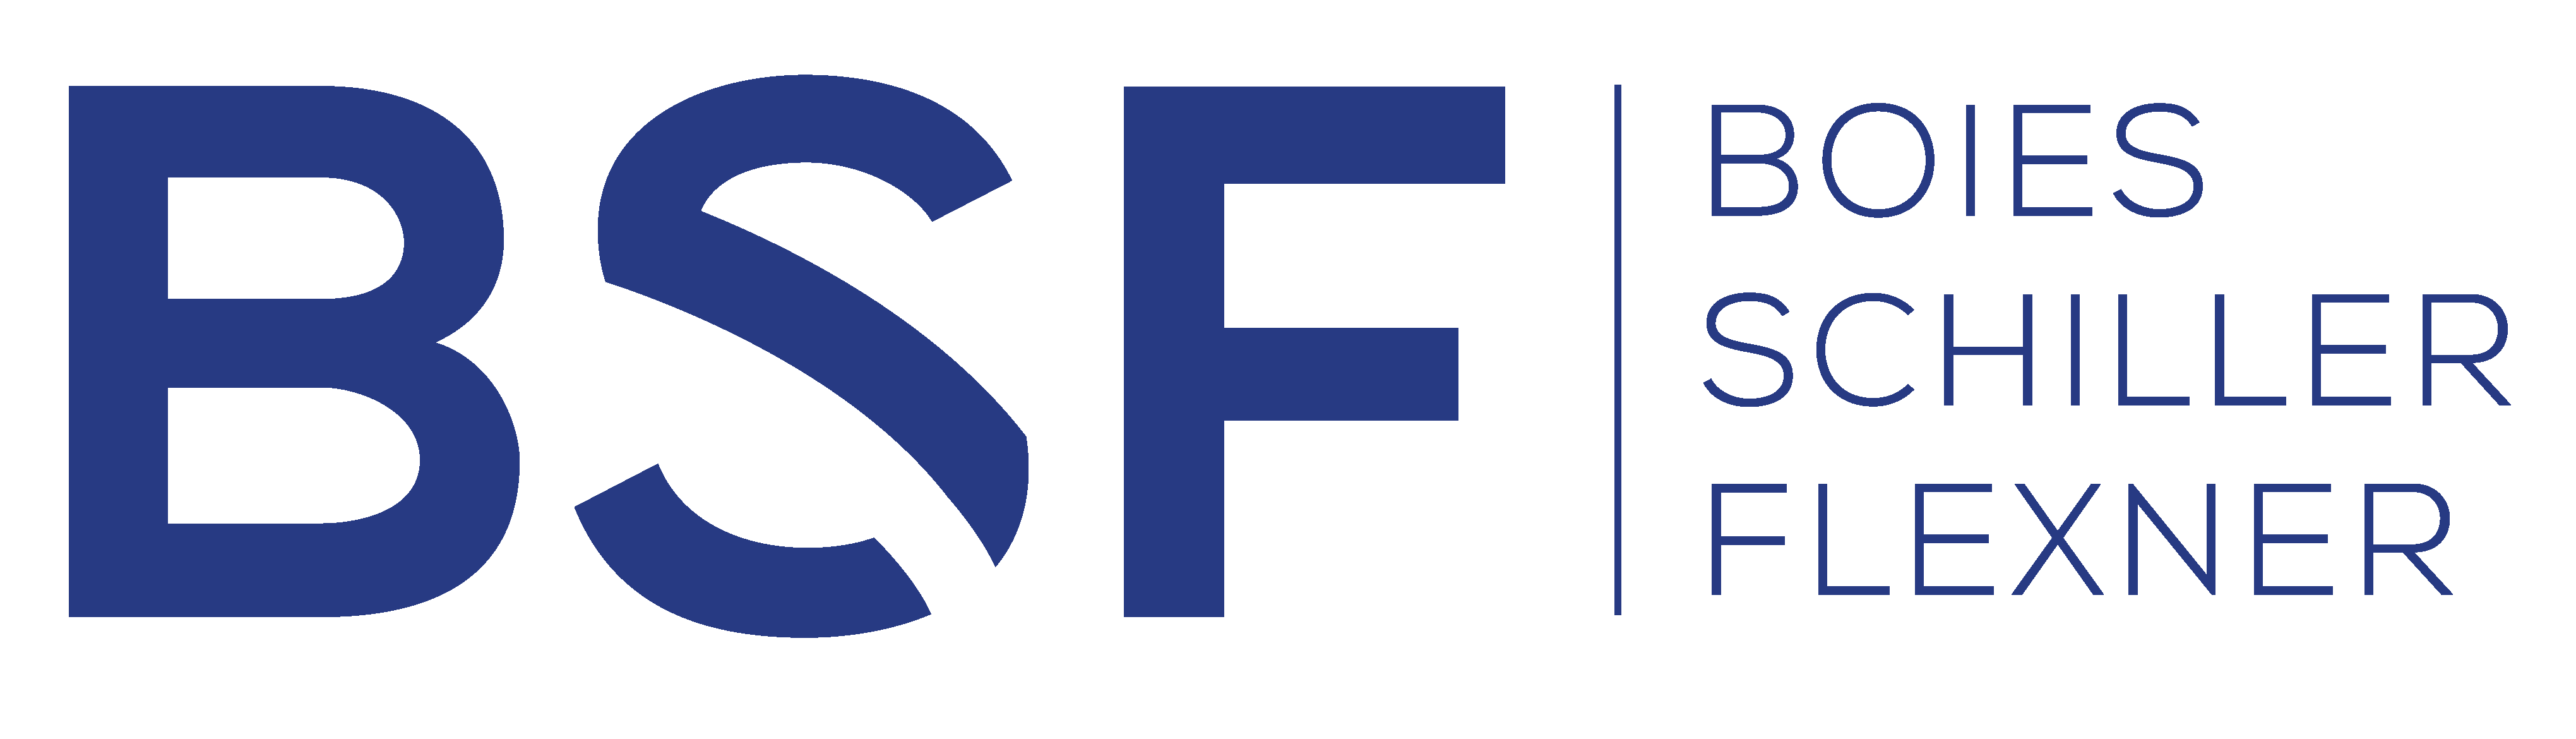 logo of PAW partner Boies Schiller Flexner